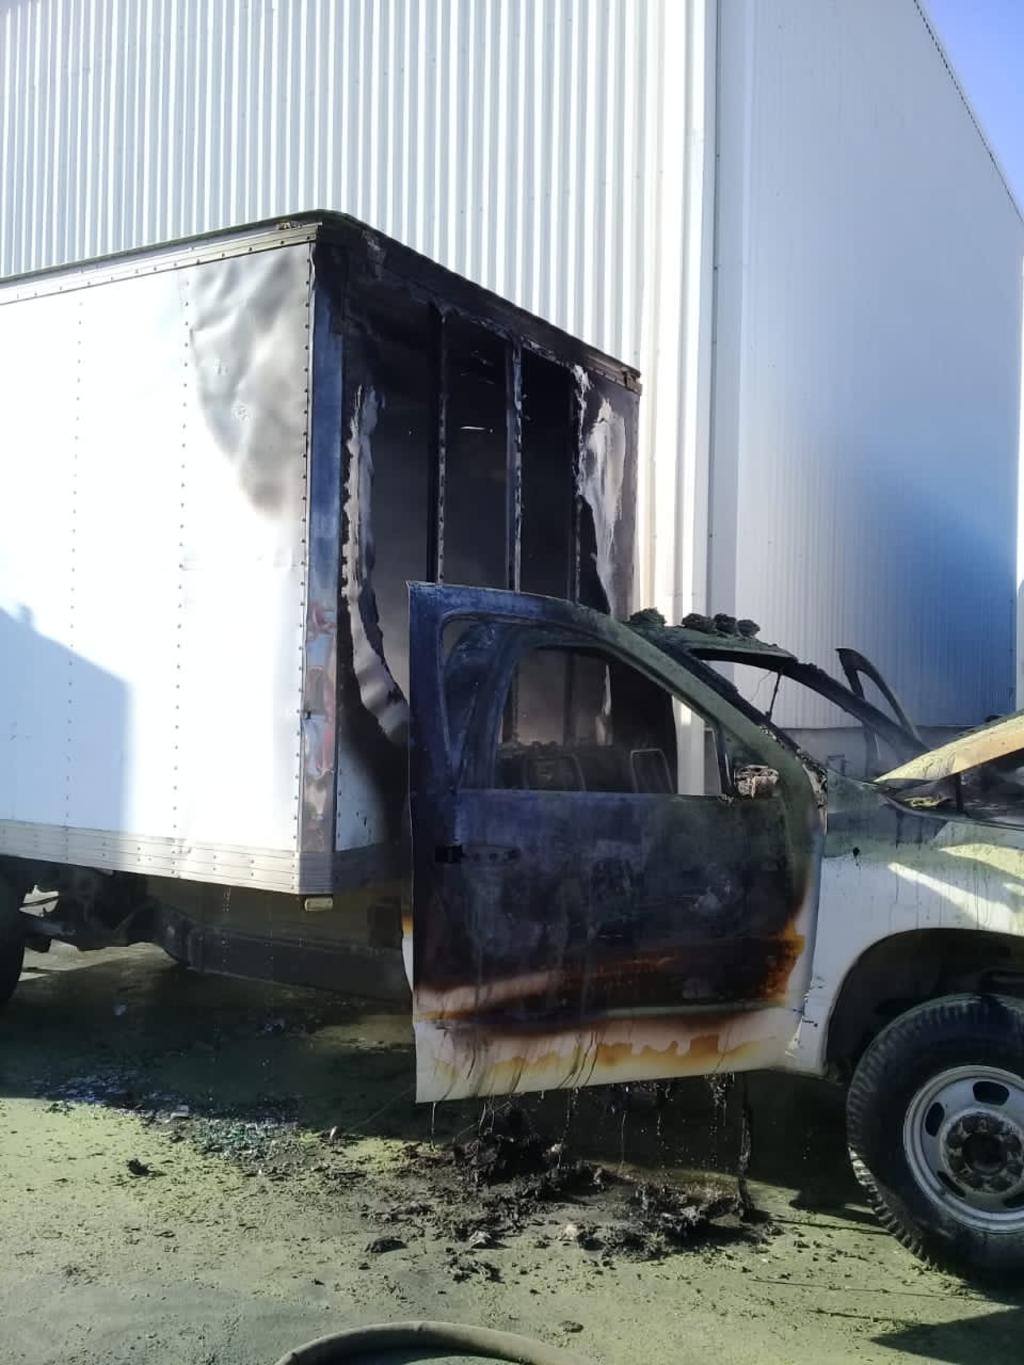 El fuego fue controlado y se estableció como causa probable de la conflagración un corto circuito en el tablero de la camioneta.